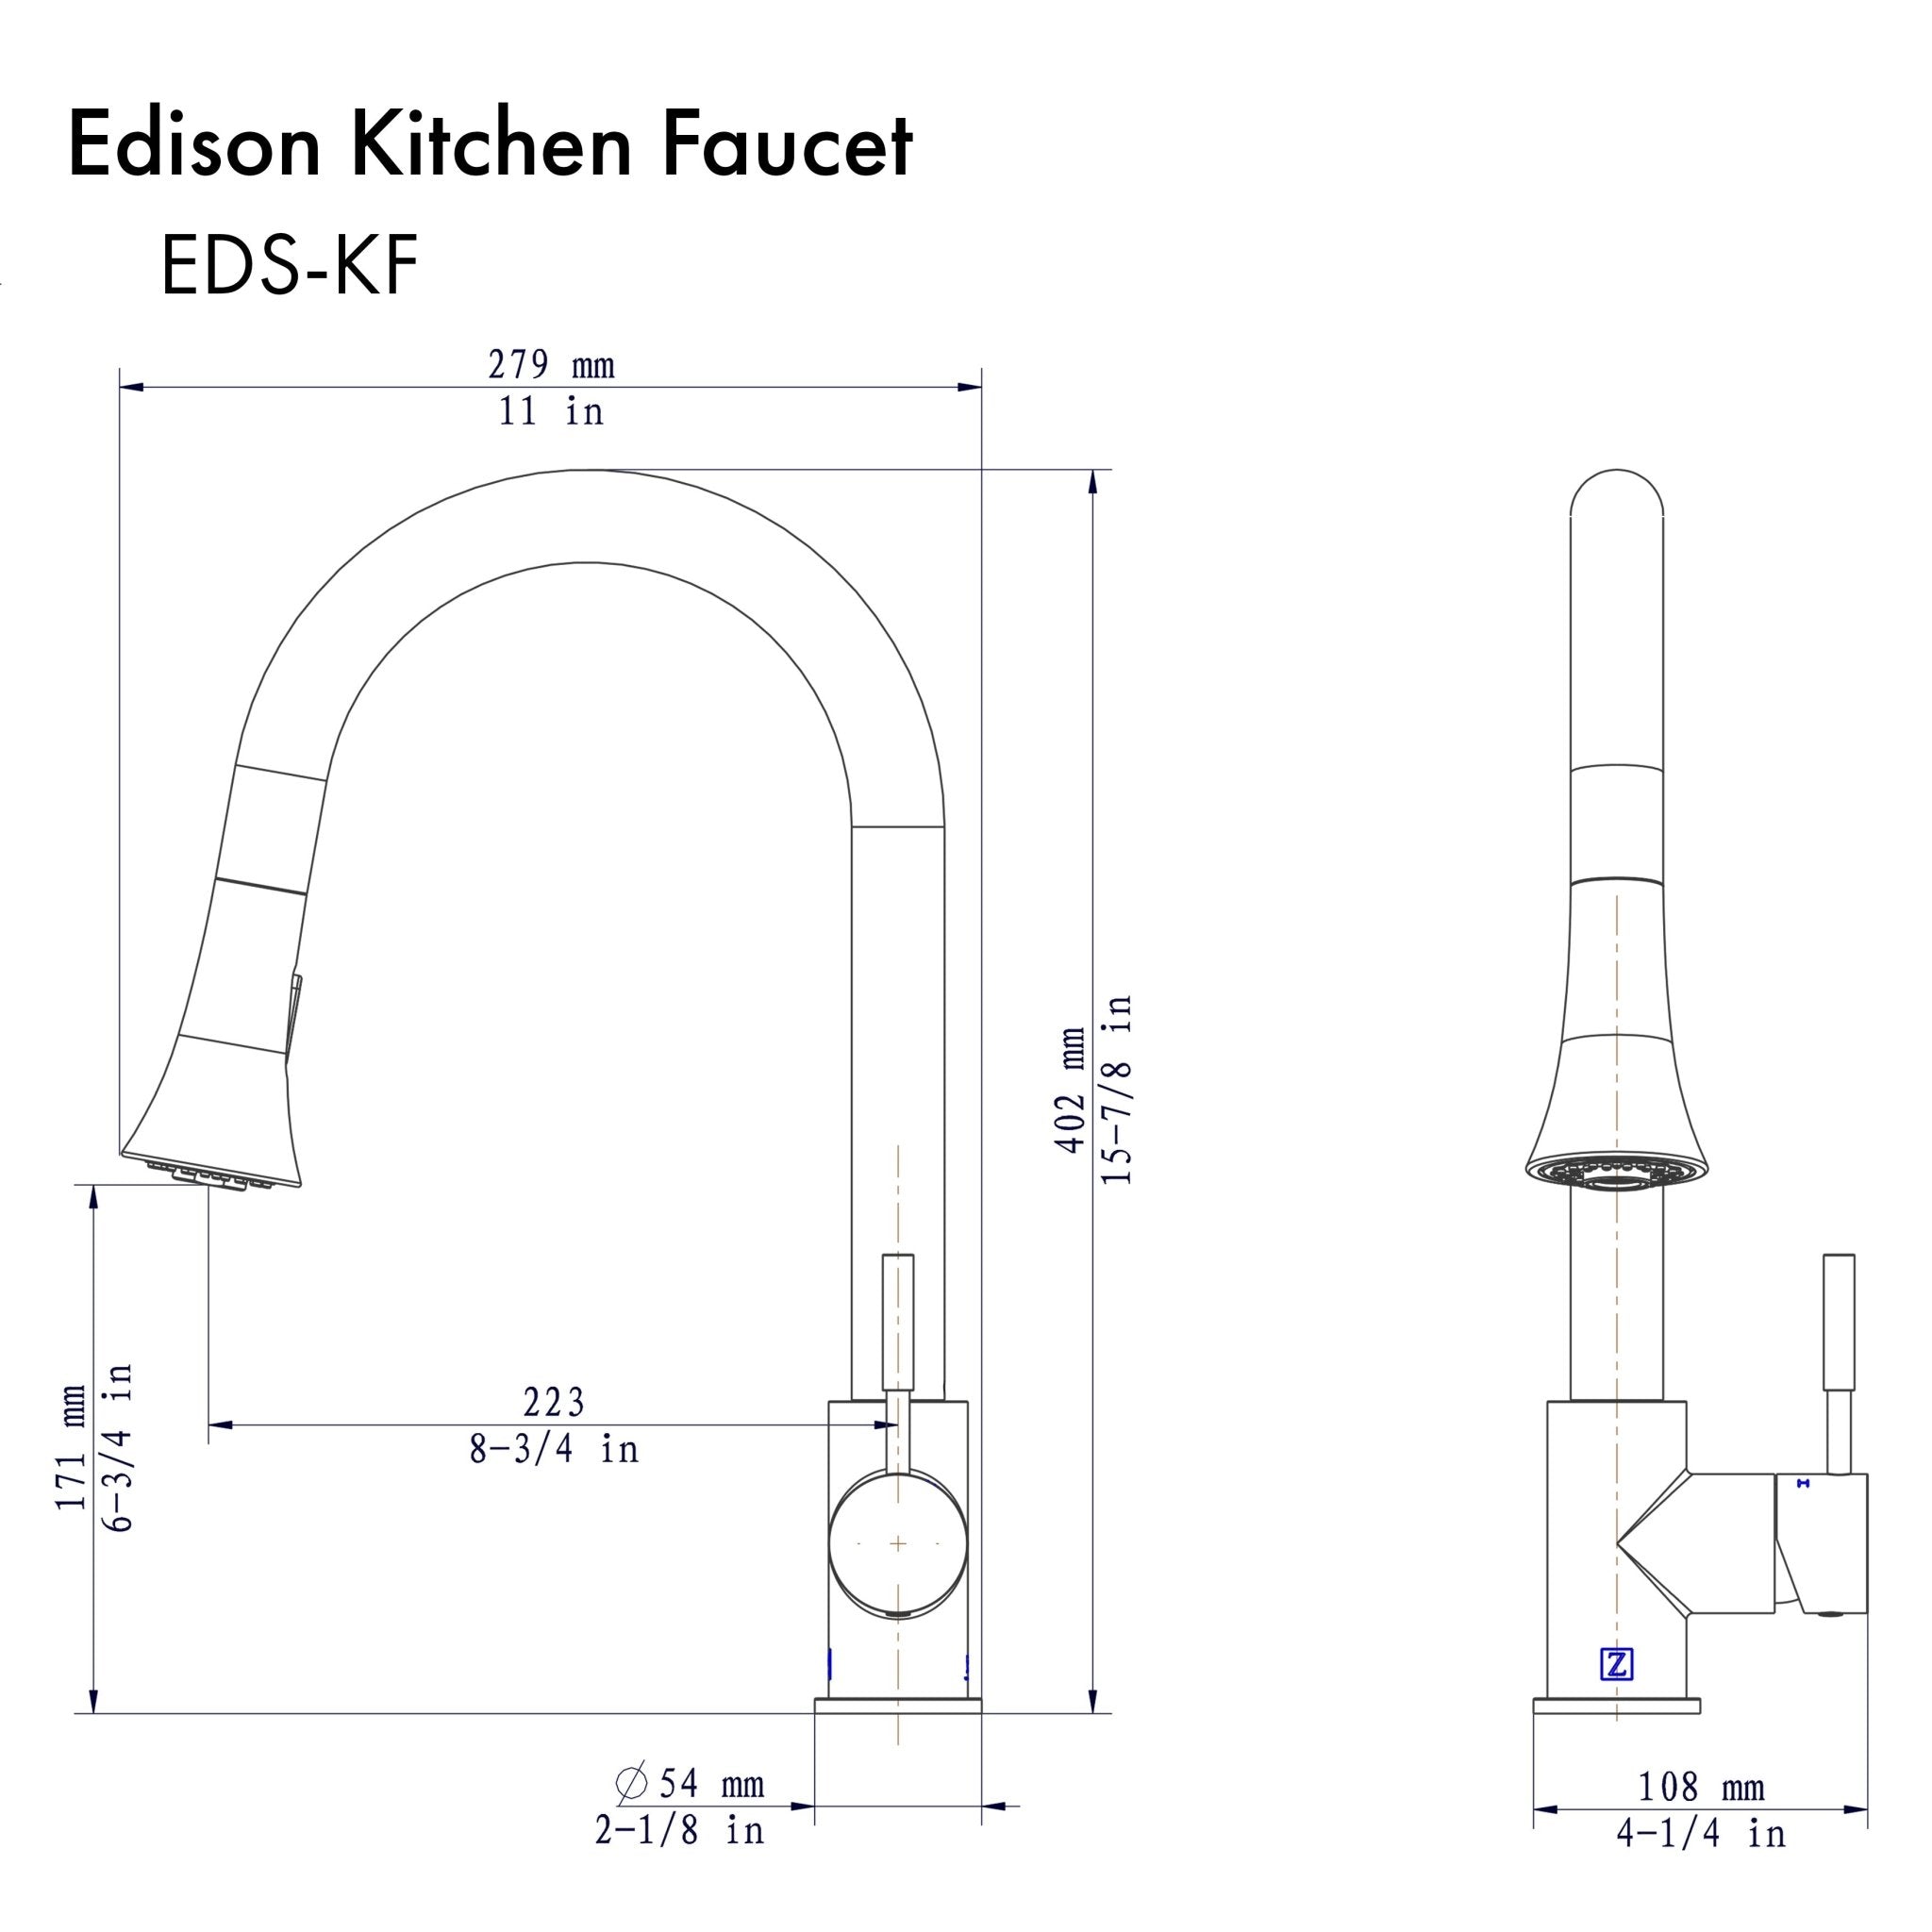 ZLINE Edison Kitchen Faucet (EDS-KF) dimensions